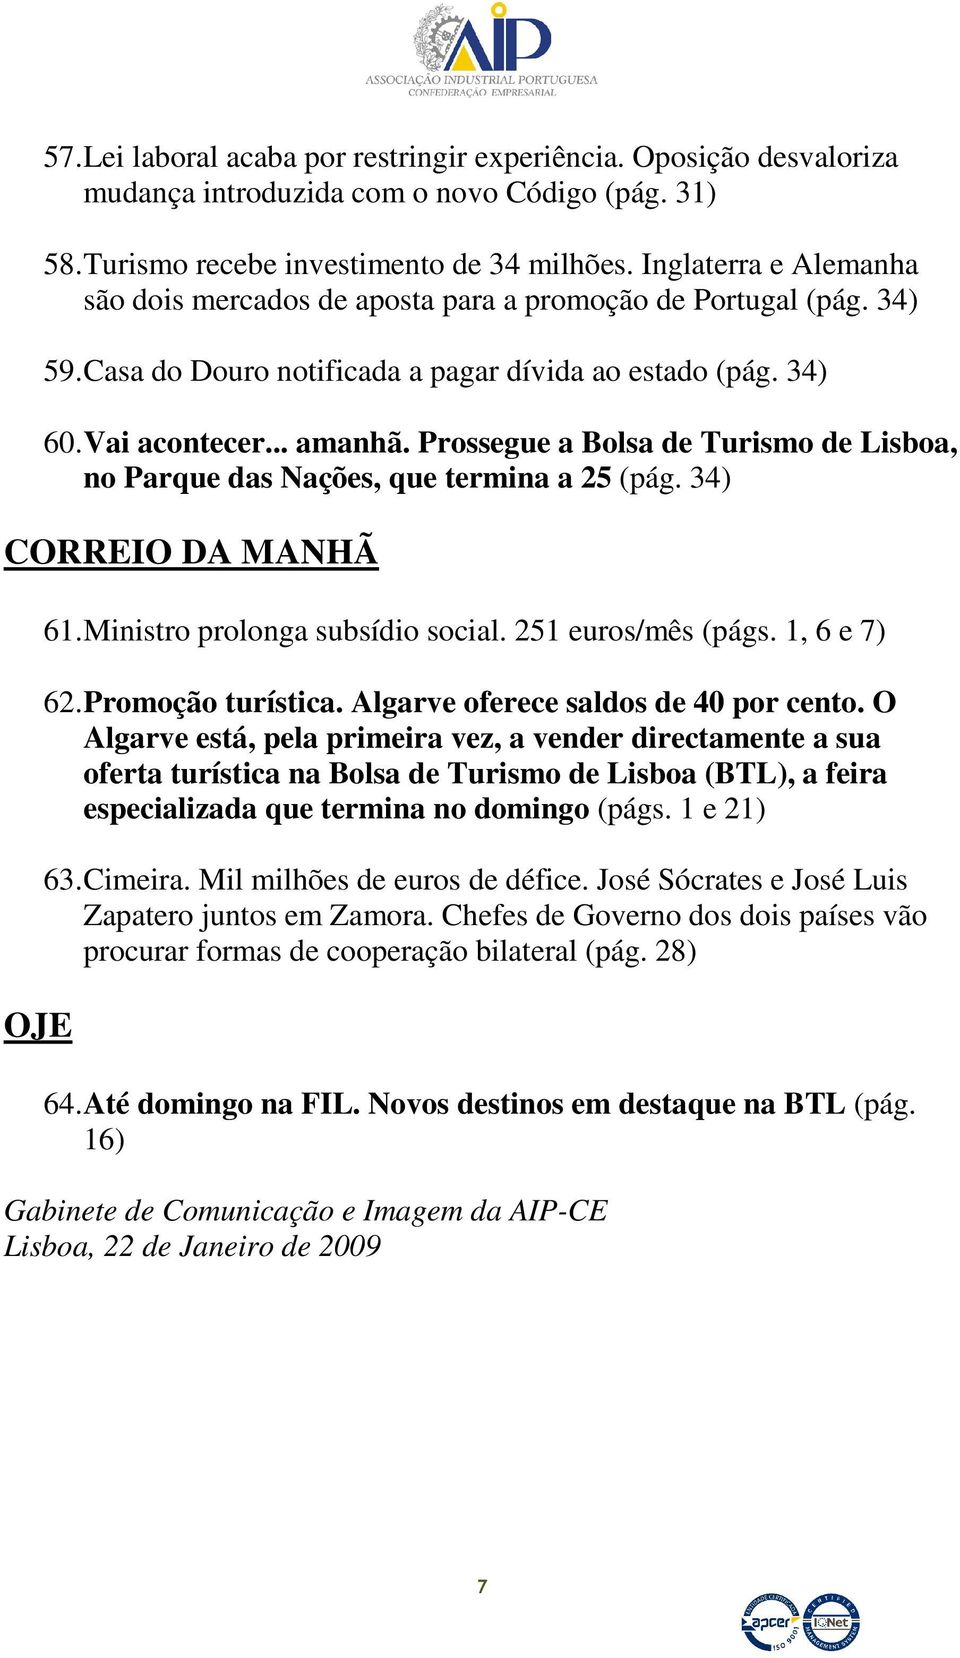 Prossegue a Bolsa de Turismo de Lisboa, no Parque das Nações, que termina a 25 (pág. 34) CORREIO DA MANHÃ OJE 61. Ministro prolonga subsídio social. 251 euros/mês (págs. 1, 6 e 7) 62.